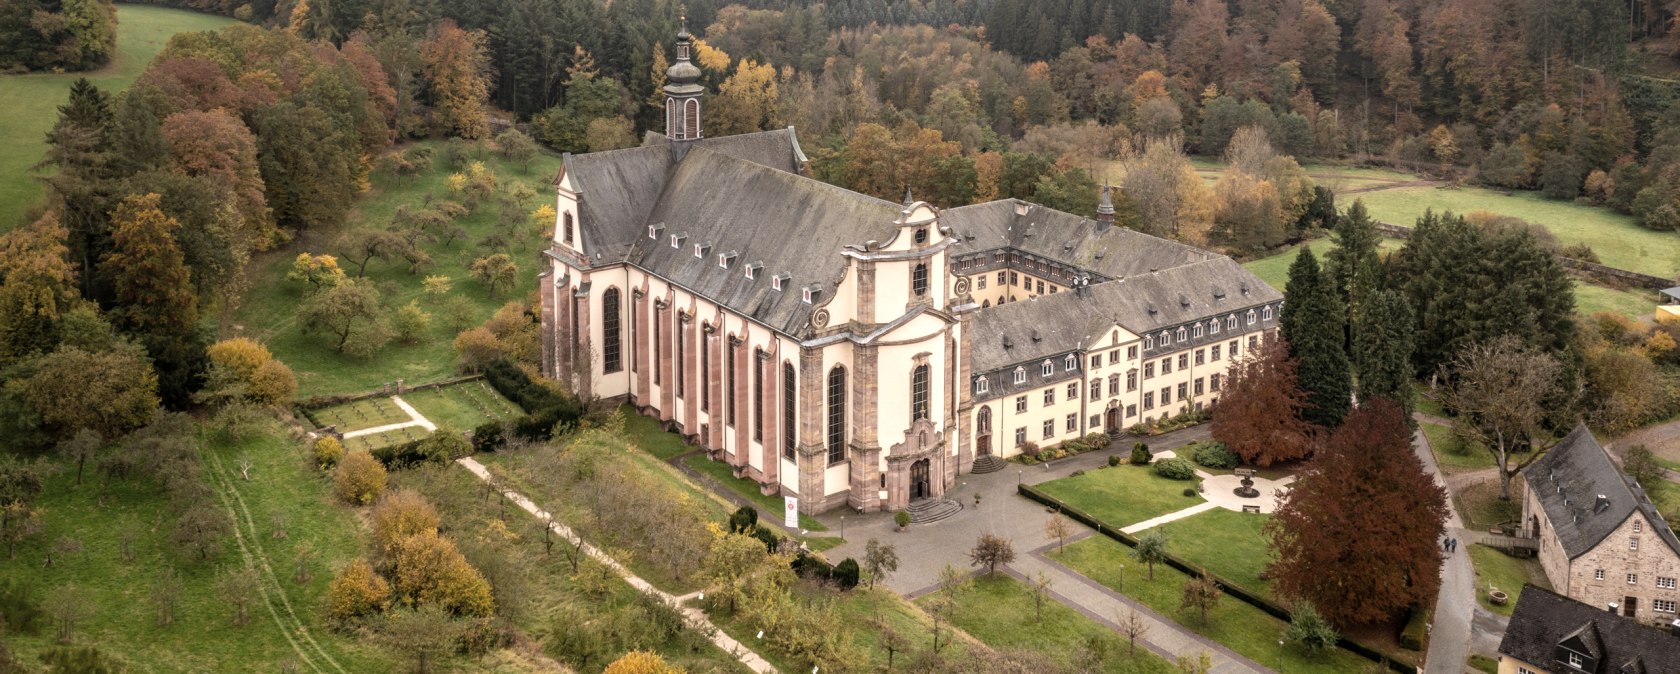 Blick auf Kloster Himmerod, © Eifel Tourismus GmbH, D. Ketz